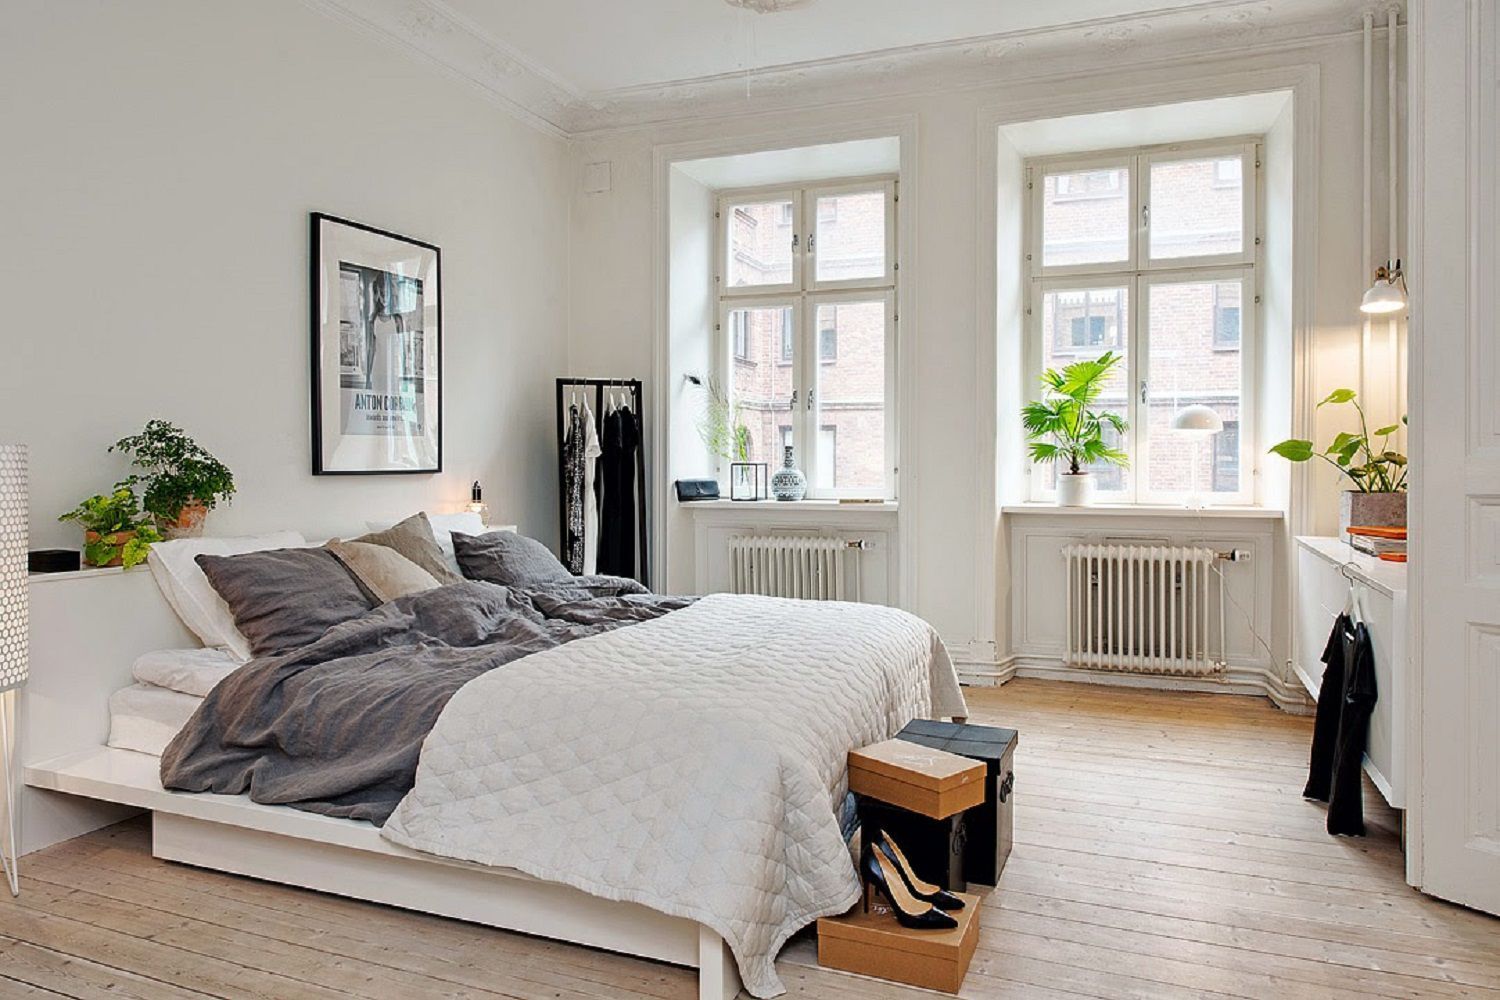 Phòng ngủ trong phong cách Scandinavian tạo nên không gian thoải mái và thư thái để đắm mình trong giấc ngủ ngon